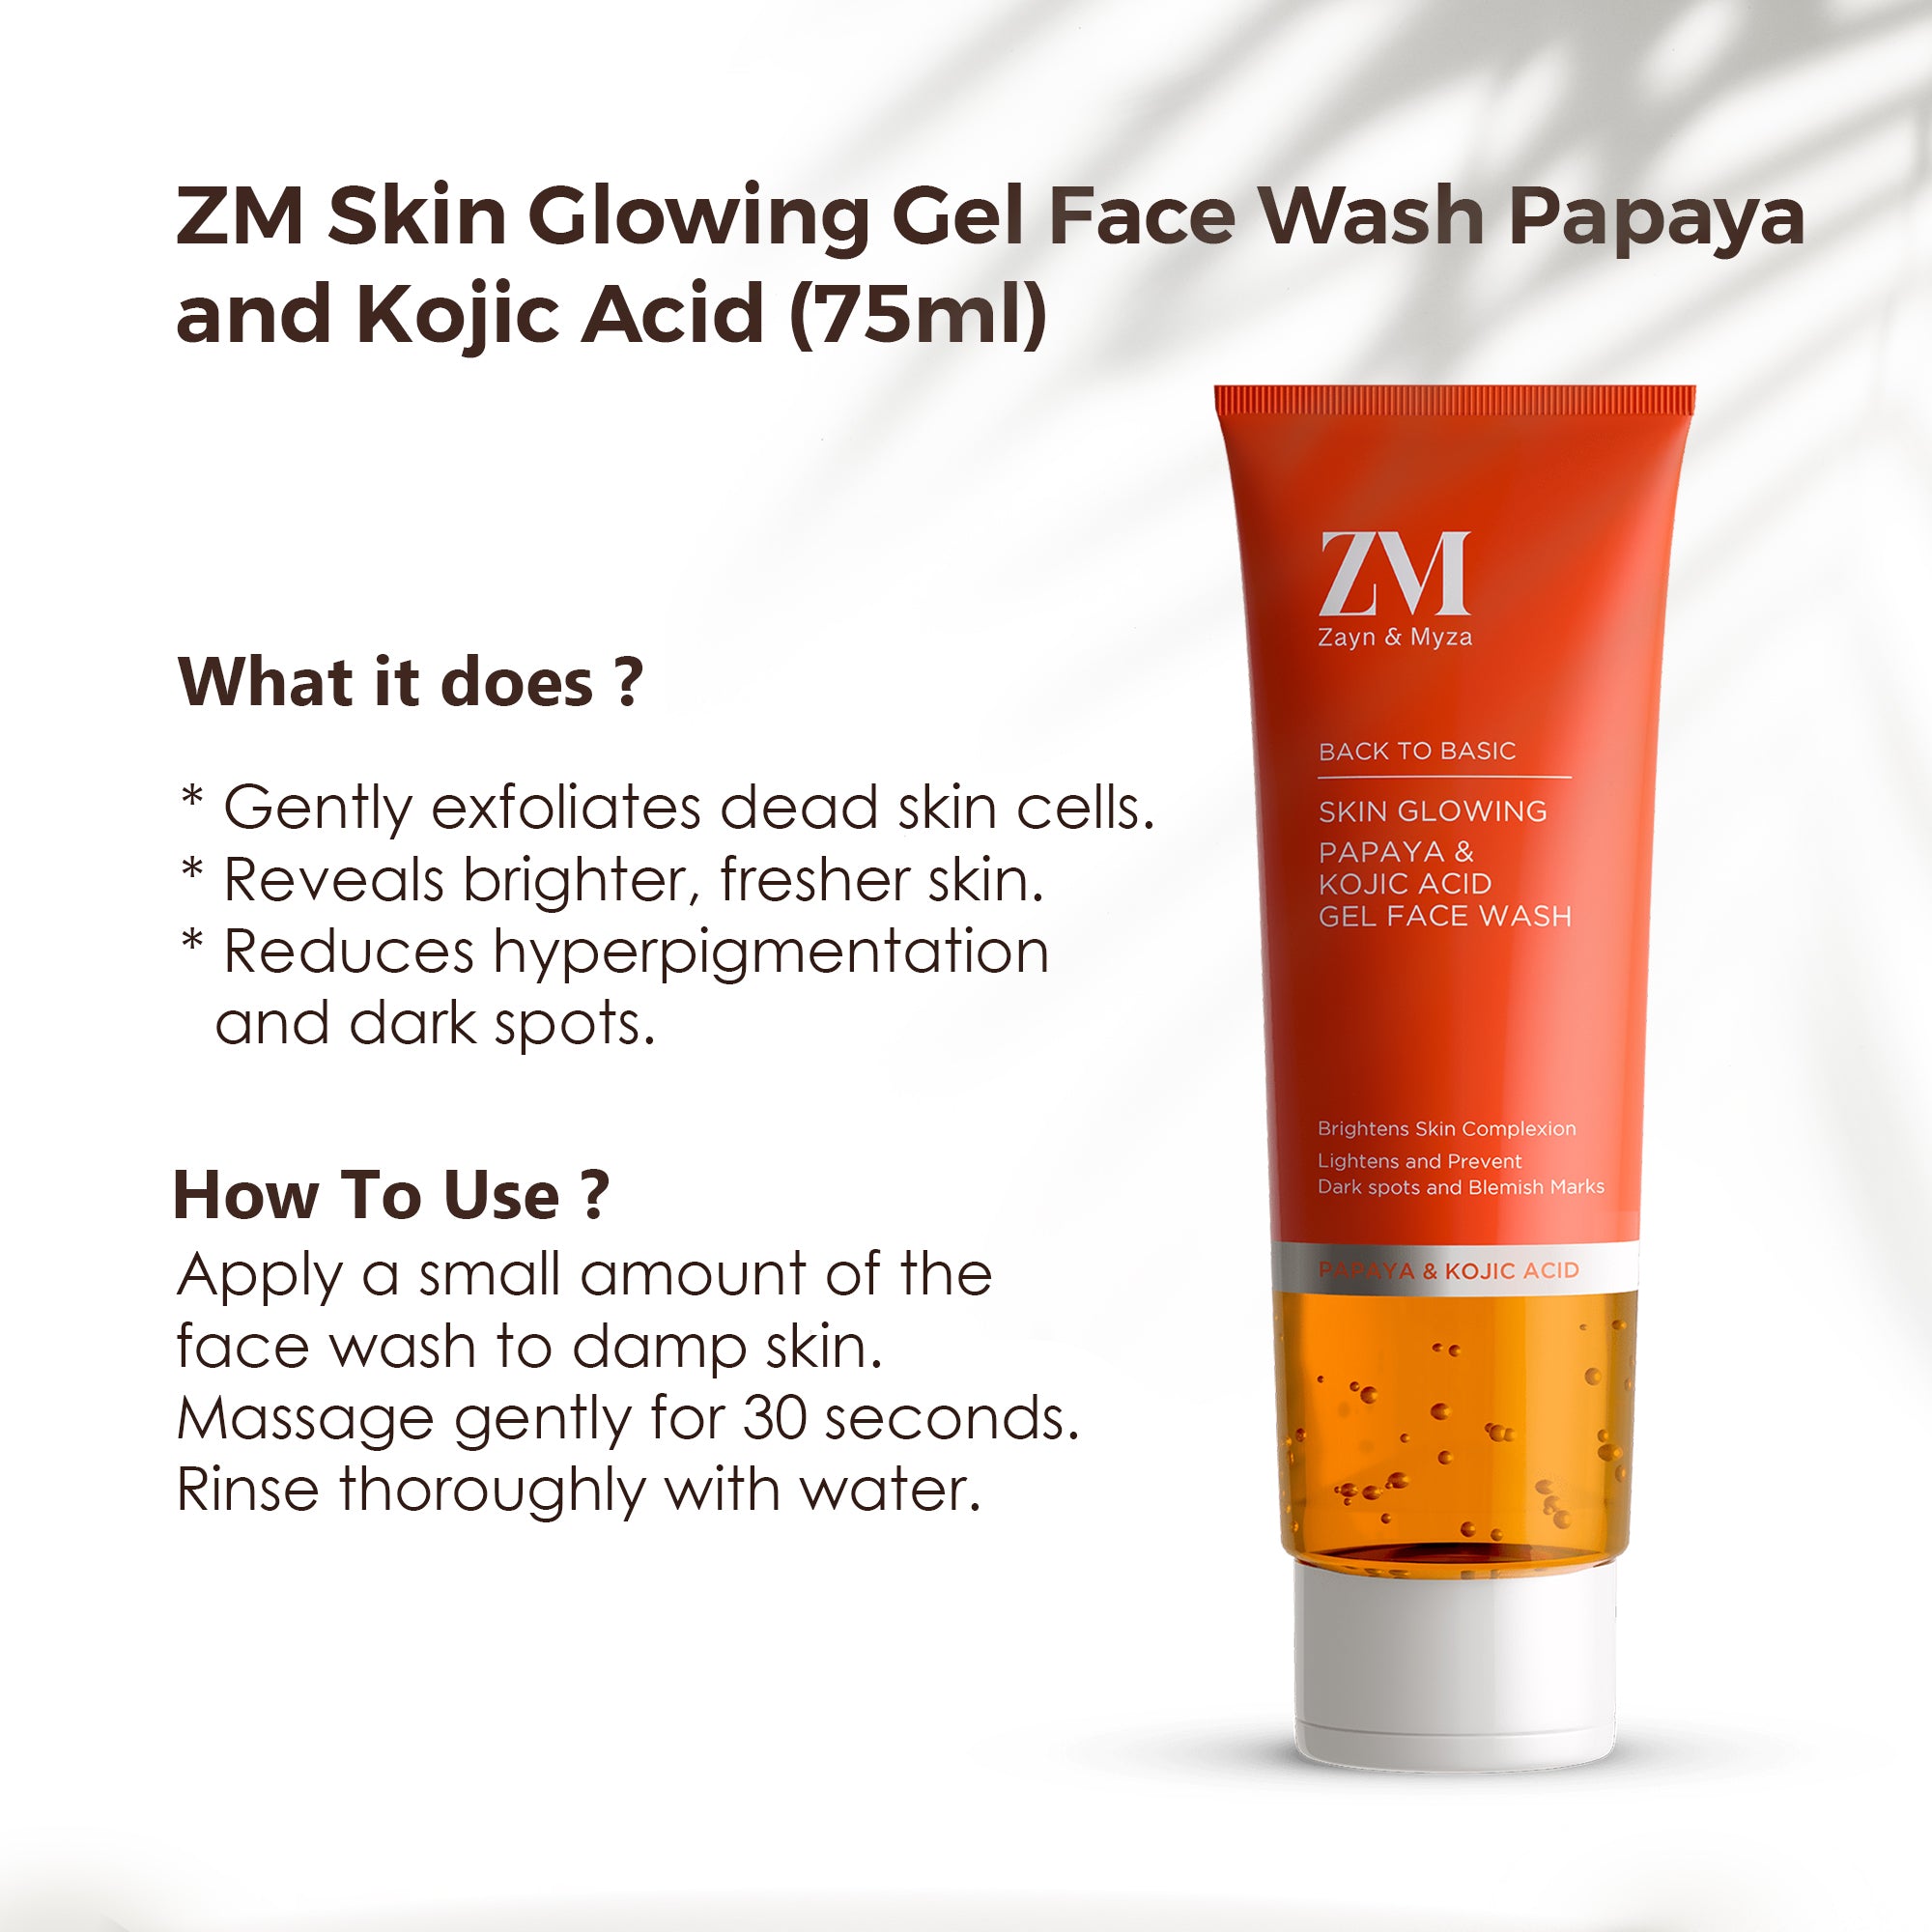 ZM Skin Glowing Gel Face Wash Papaya and Kojic Acid (75ml)